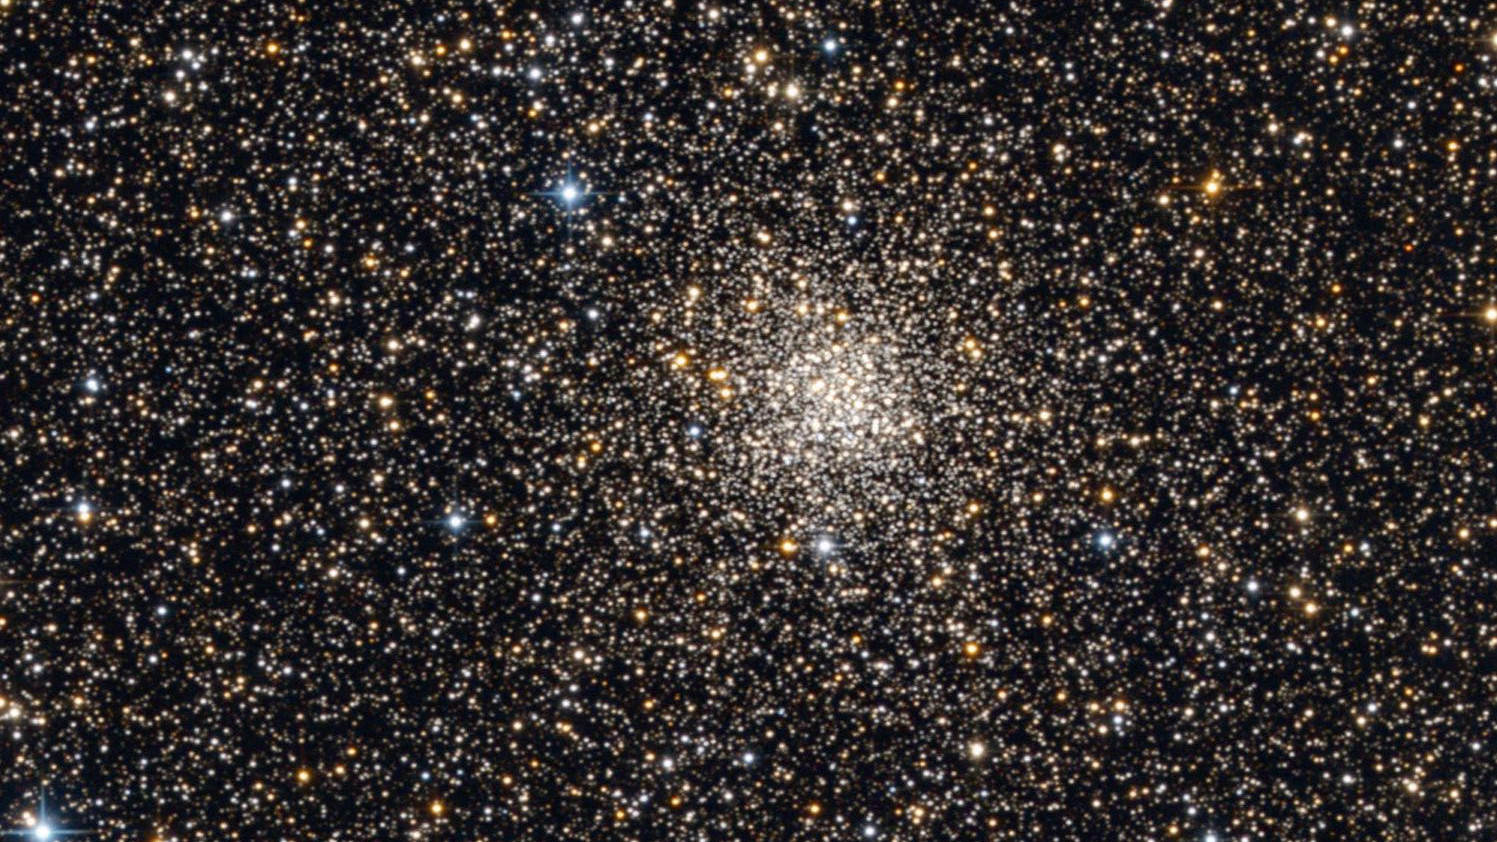 L'ammasso globulare Messier 71 ripreso da un telescopio Newton da 12 pollici. Bernhard Hubl / CCD Guide